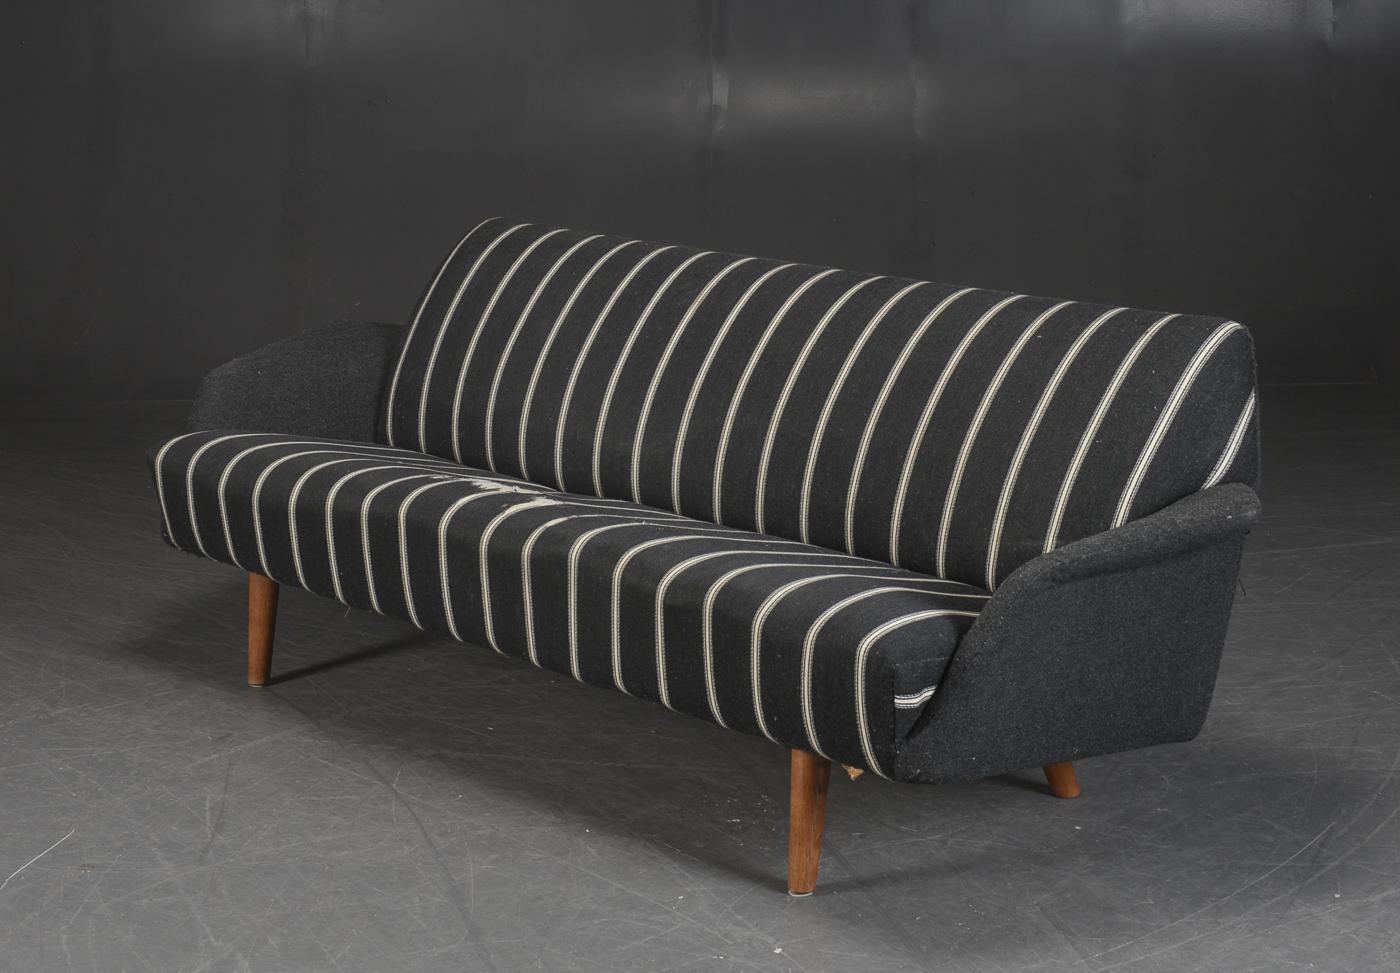 Atemberaubendes großes dänisches modernes Sofa aus den 1960er Jahren, entworfen von Illum Wikkelso als Modell 444 für Aarhus Møbelfabri in den frühen 1960er Jahren. Wikkelsos Sofadesign der 1960er Jahre gehörte wirklich zu den coolsten und